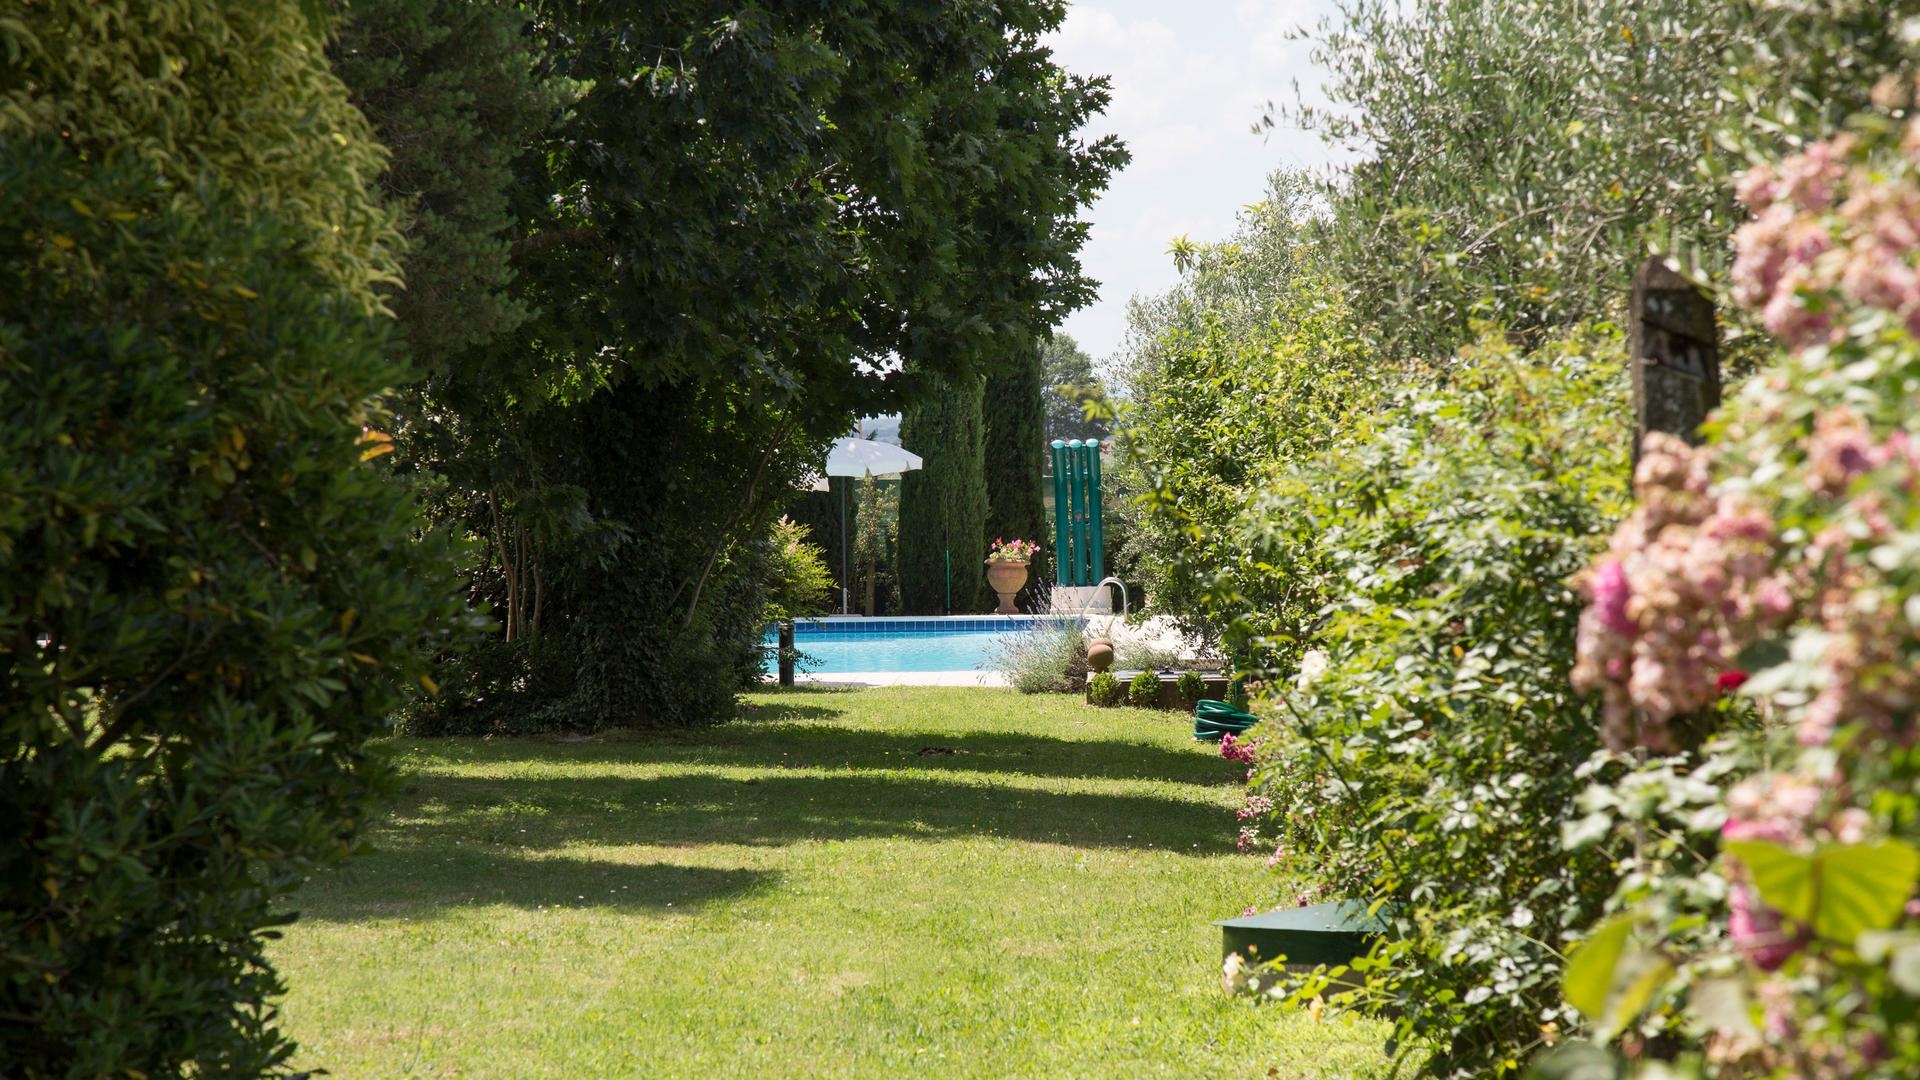 Agriturismo in Cortona with swimming pool